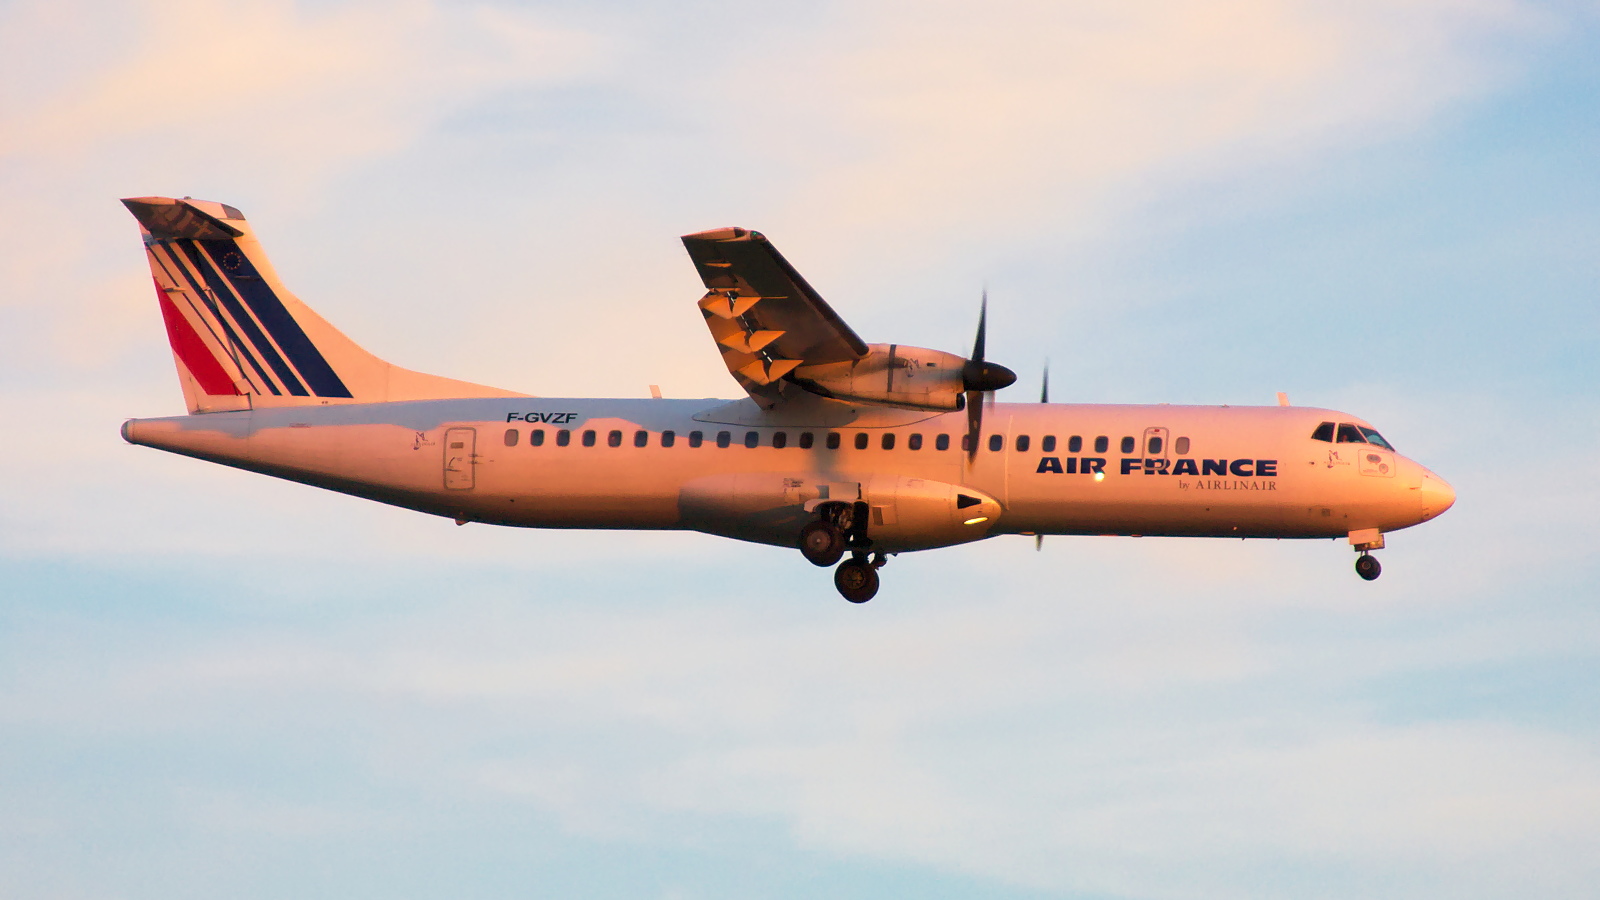 F-GVZF ✈ Airlinair ATR 72-212 @ London-Heathrow